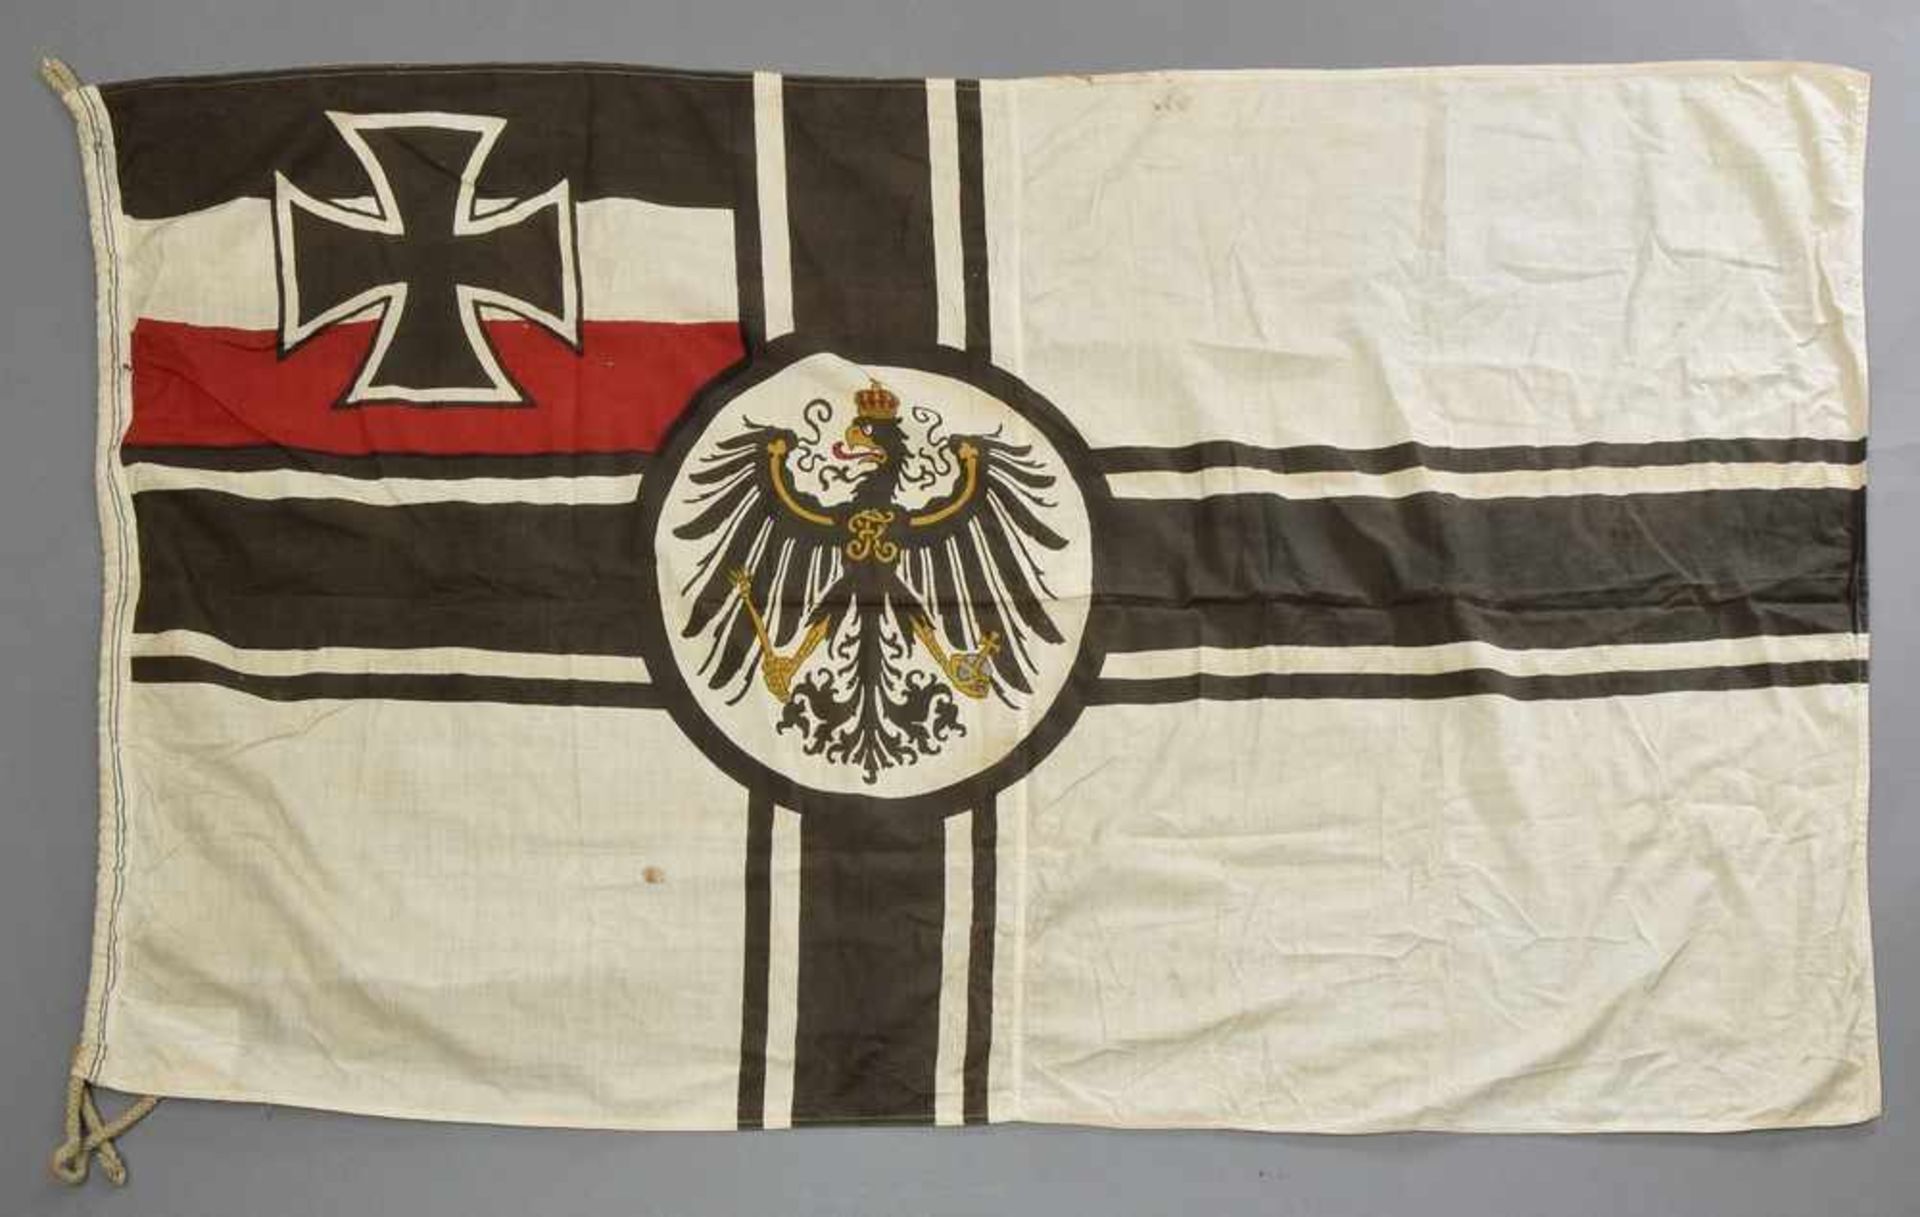 Reichskriegsflagge in den Farben Schwarz, Rot, Weiß, Deutsches Kaiserreich, 83x155cm, partiell